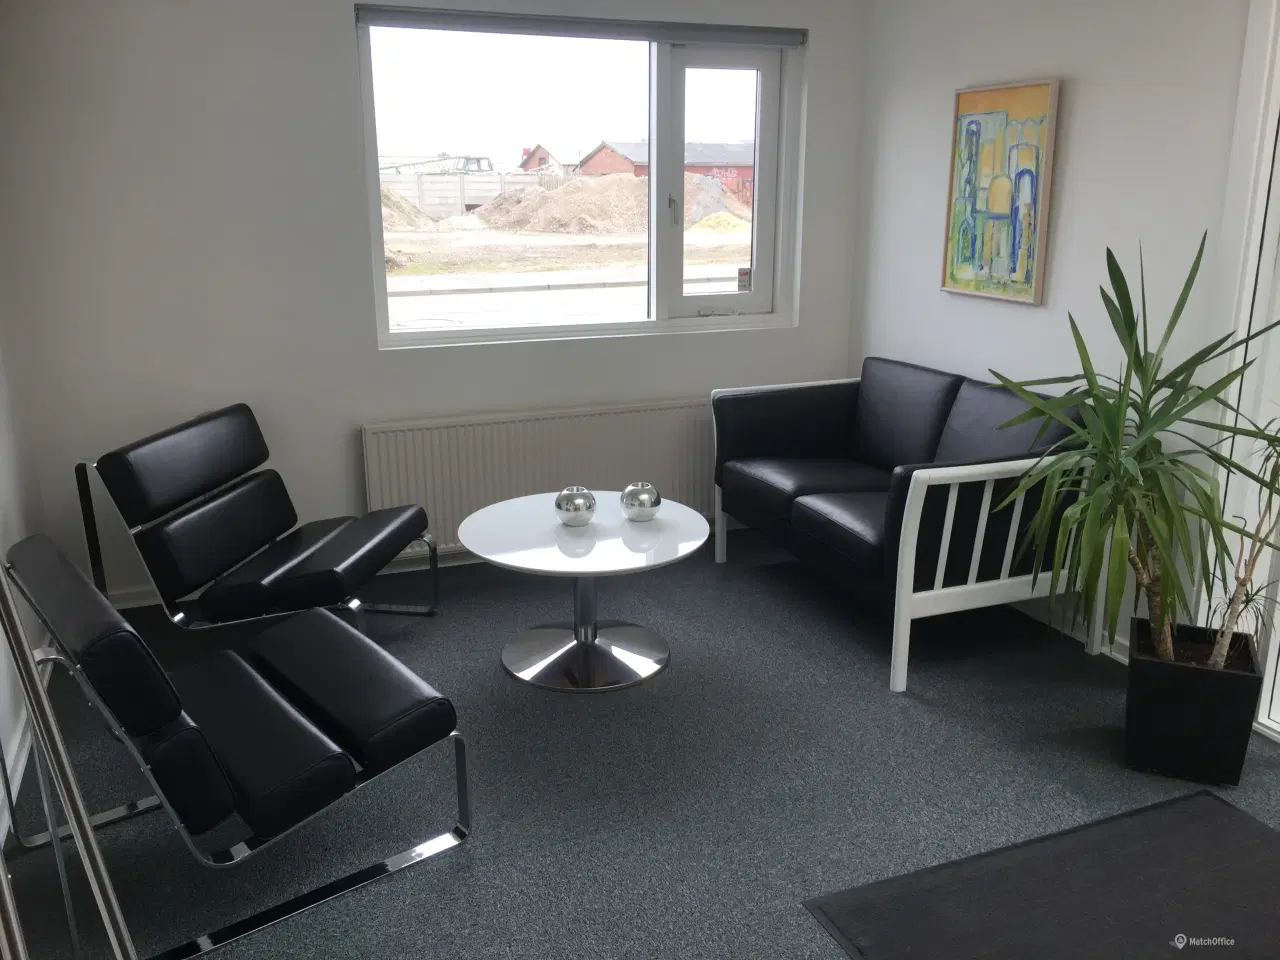 Billede 2 - 20 m2 Kontor ledig centralt i Esbjerg